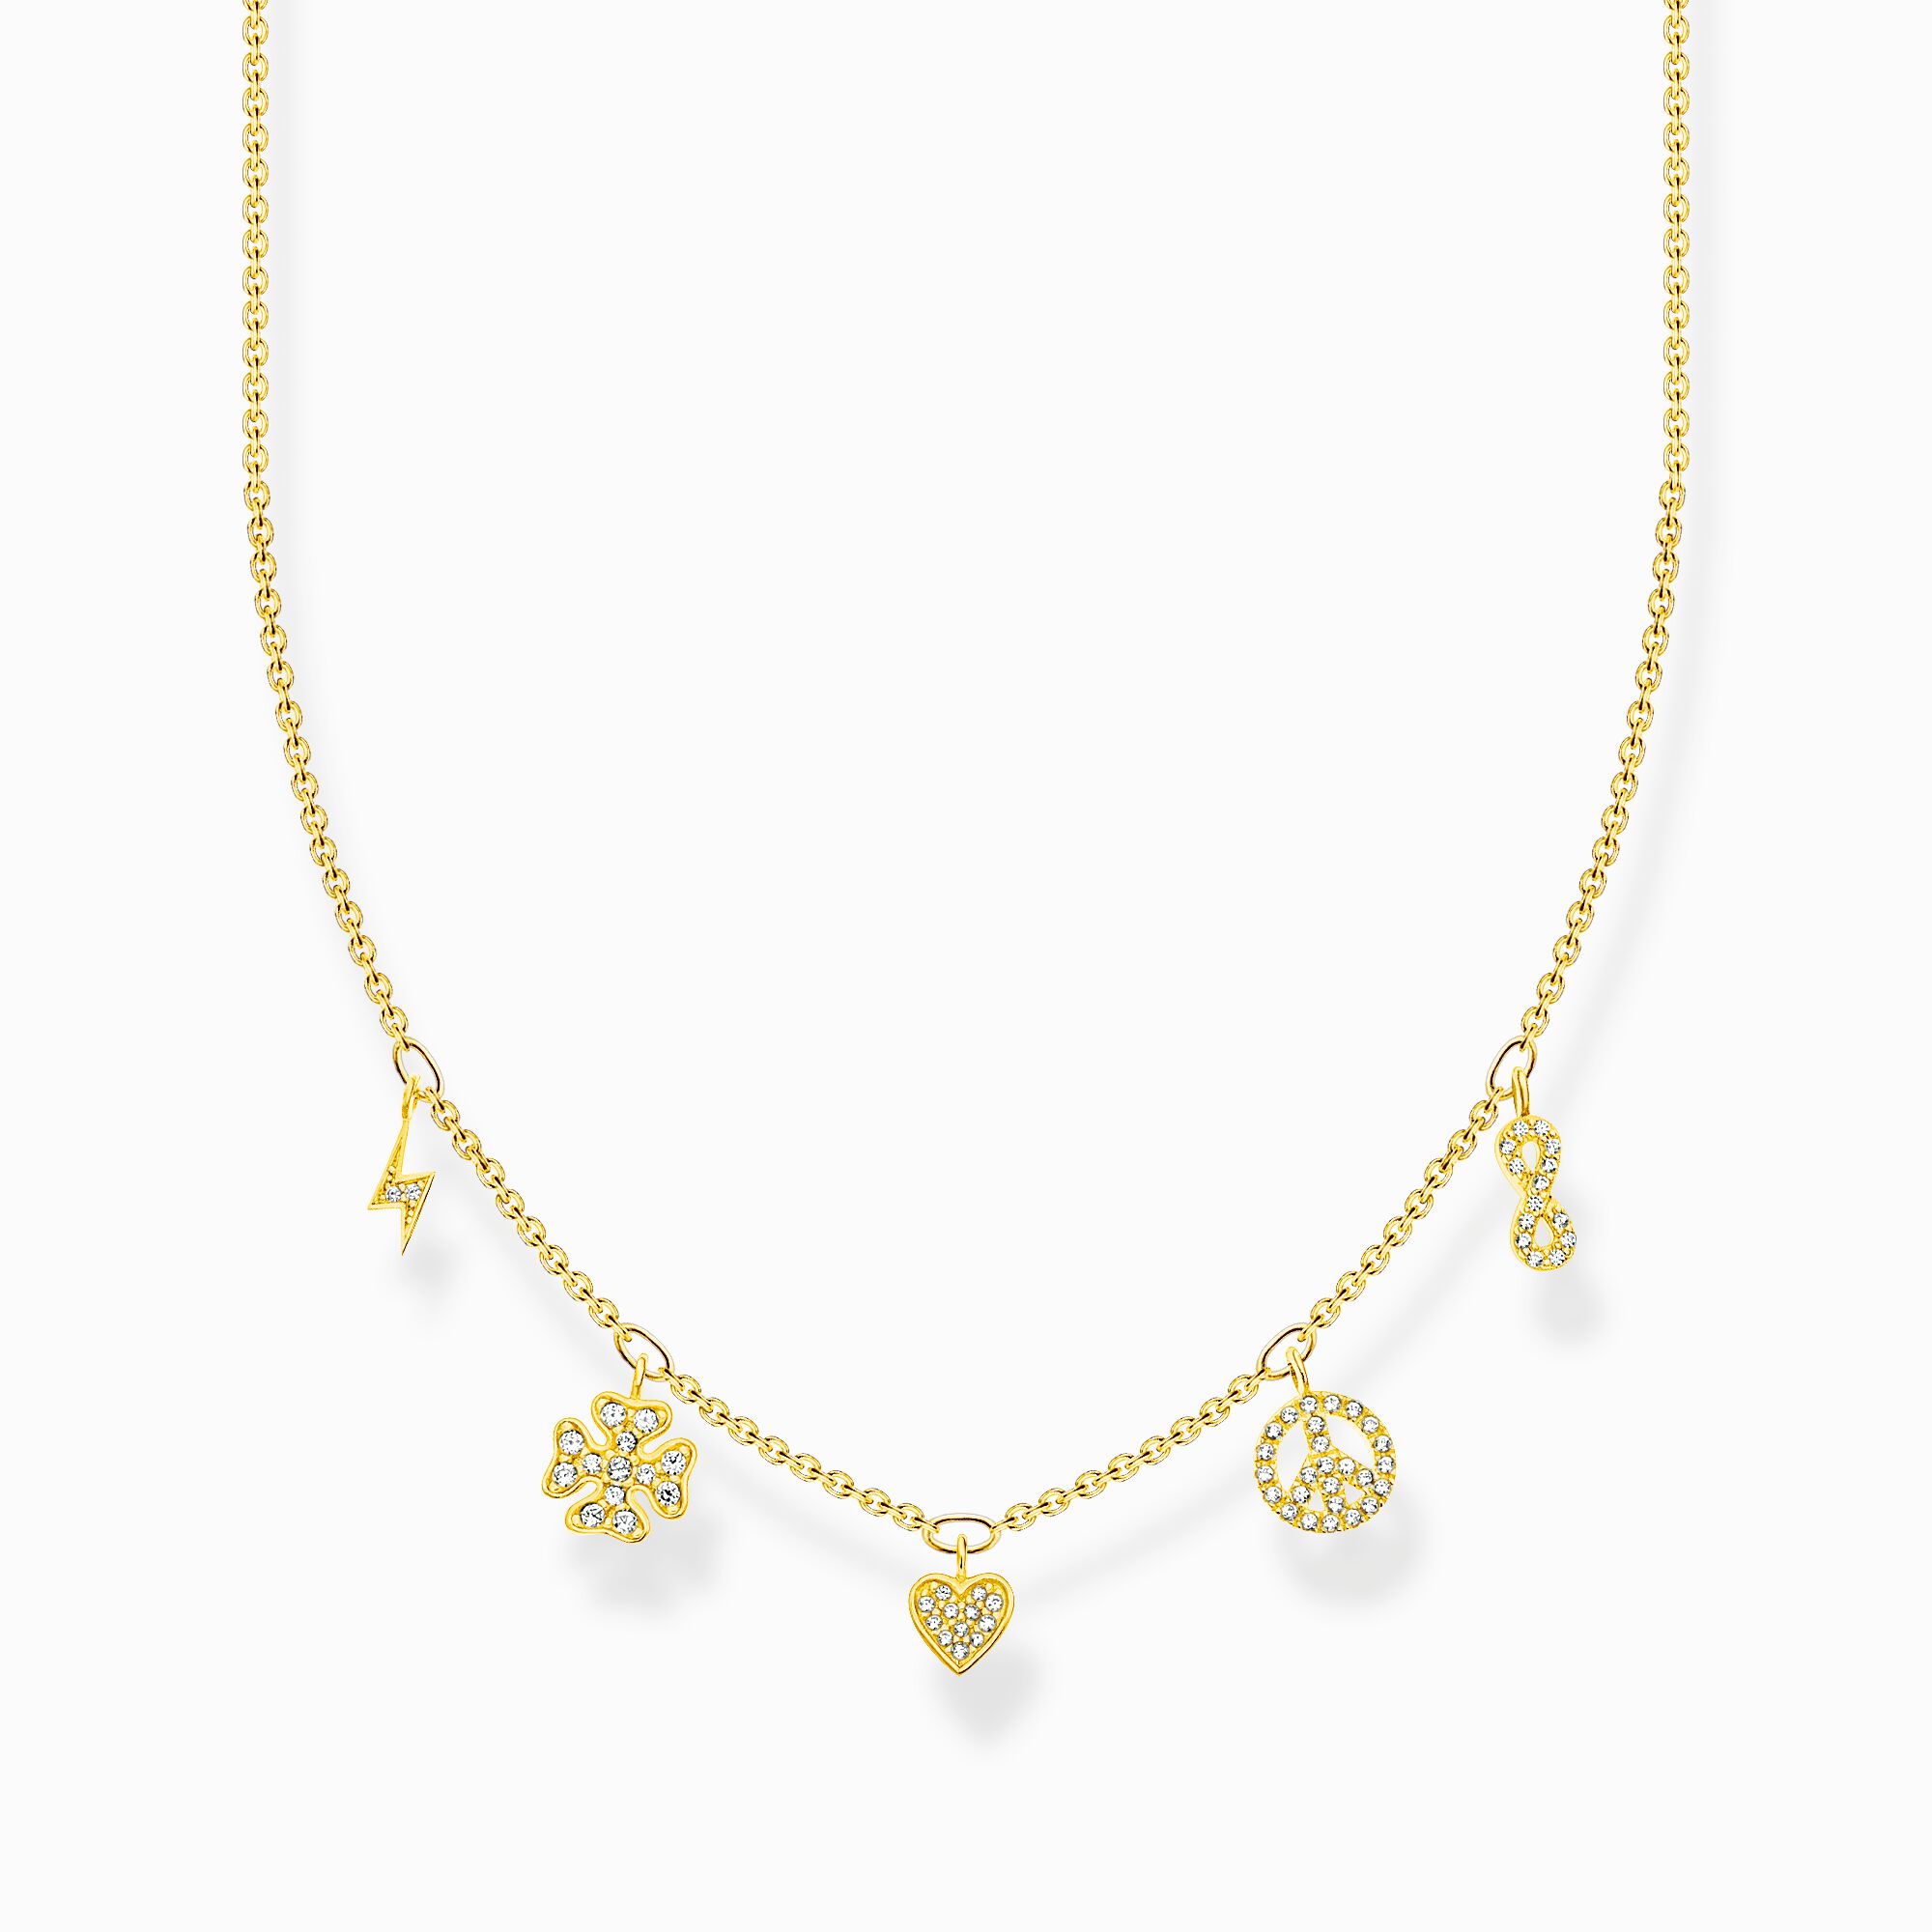 Halsband med symboler guld ur kollektionen Charming Collection i THOMAS SABO:s onlineshop